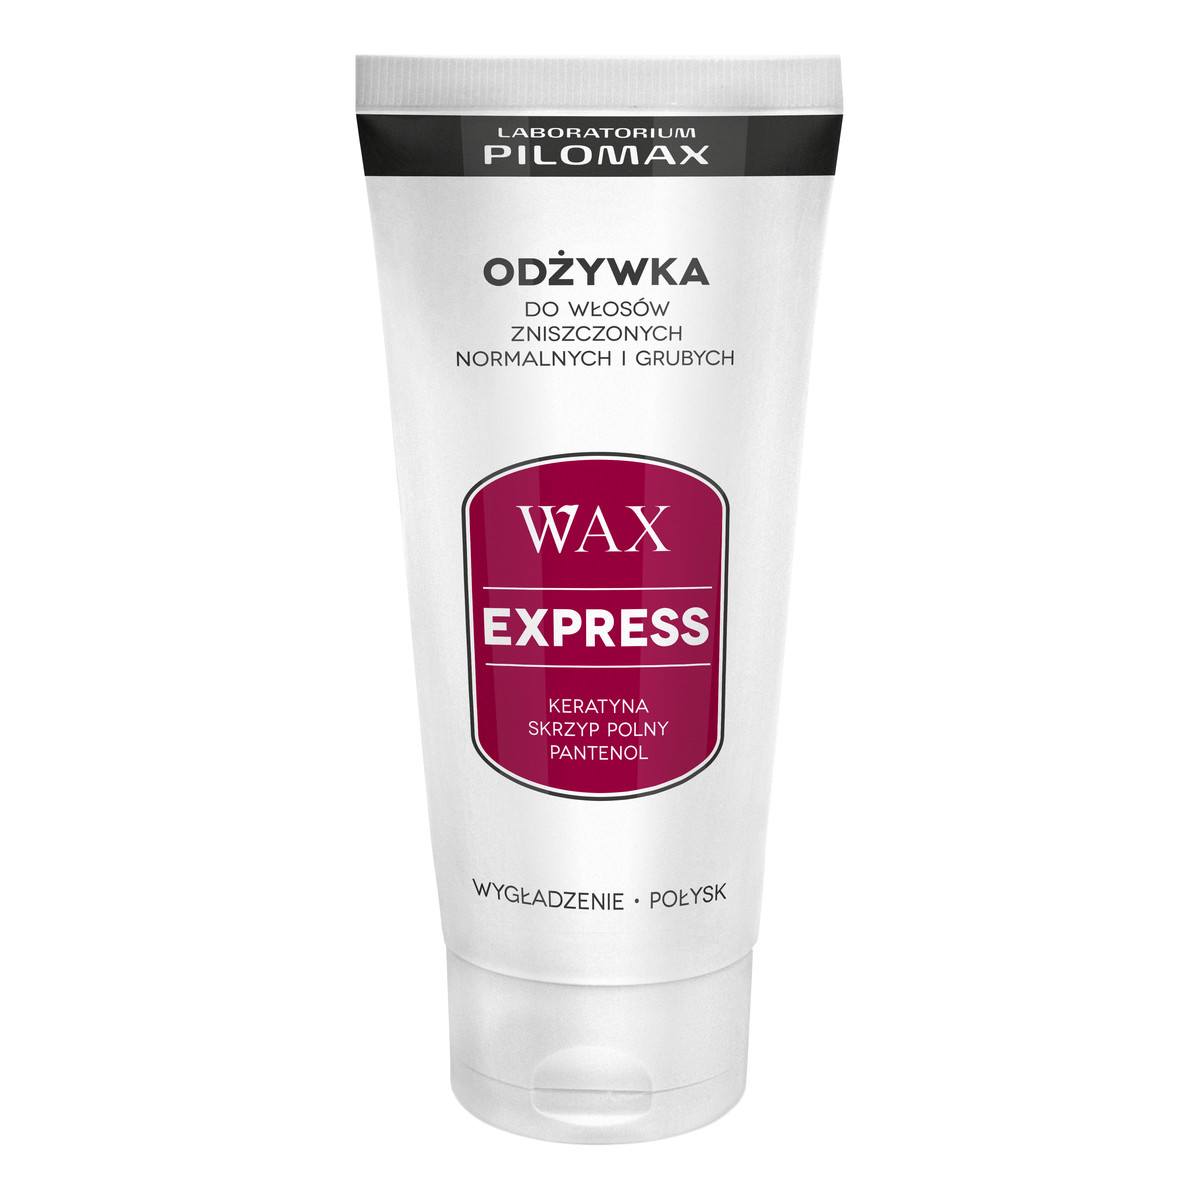 Pilomax Wax Express Daily Odżywka Do Włosów Zniszczonych, Normalnych i Grubych 200ml